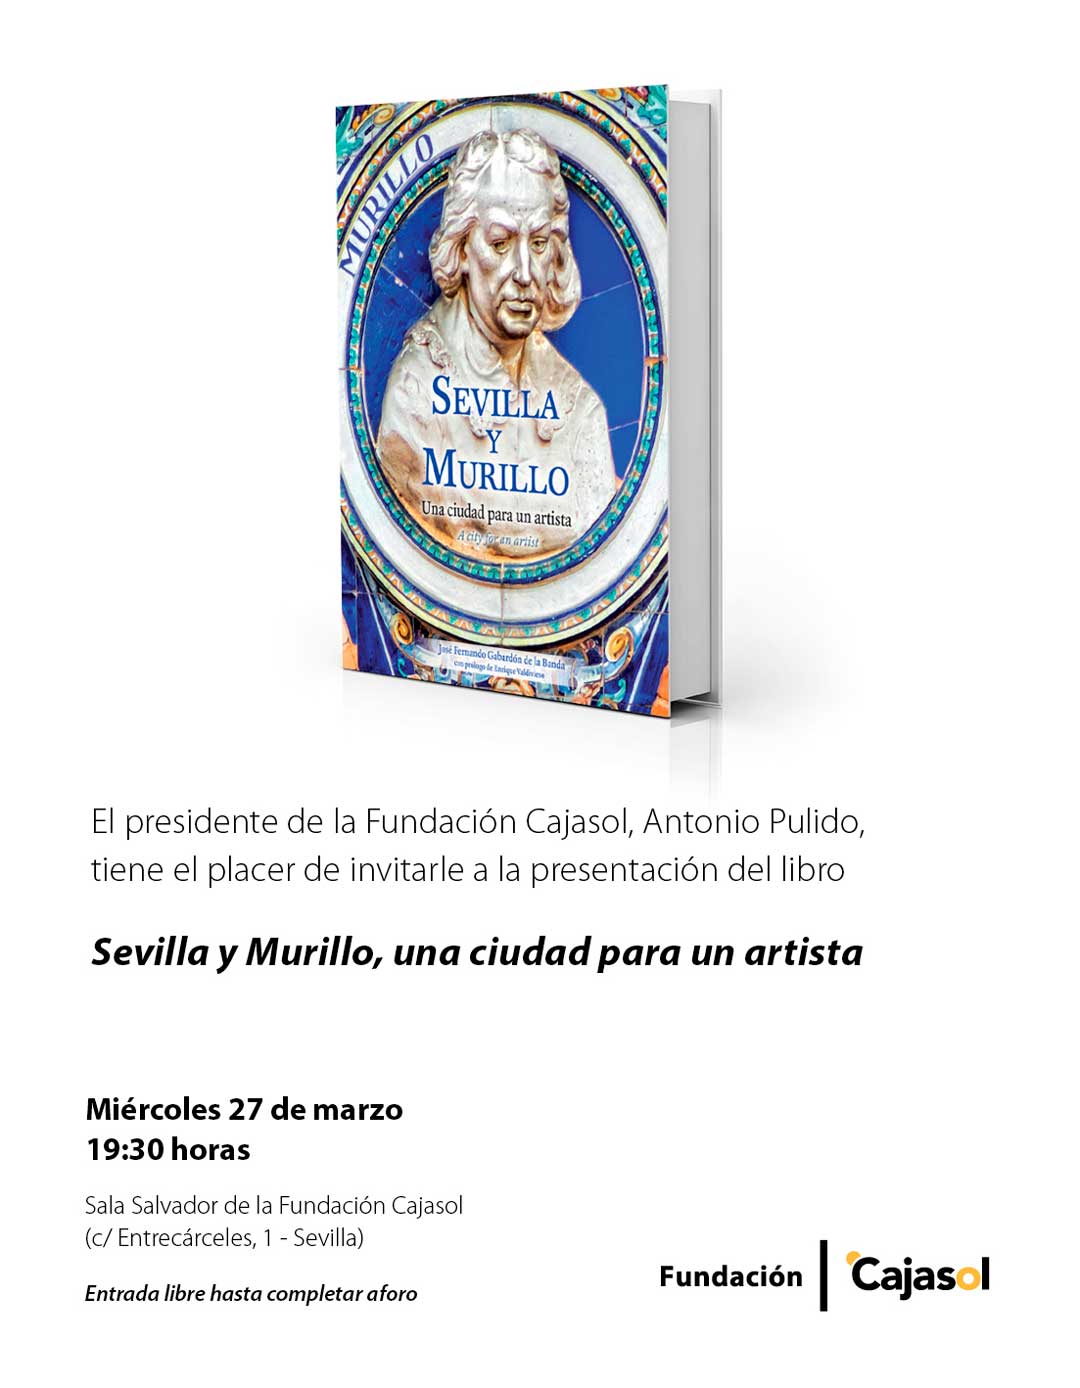 Invitación a la presentación del libro 'Sevilla y Murillo' en la Fundación Cajasol